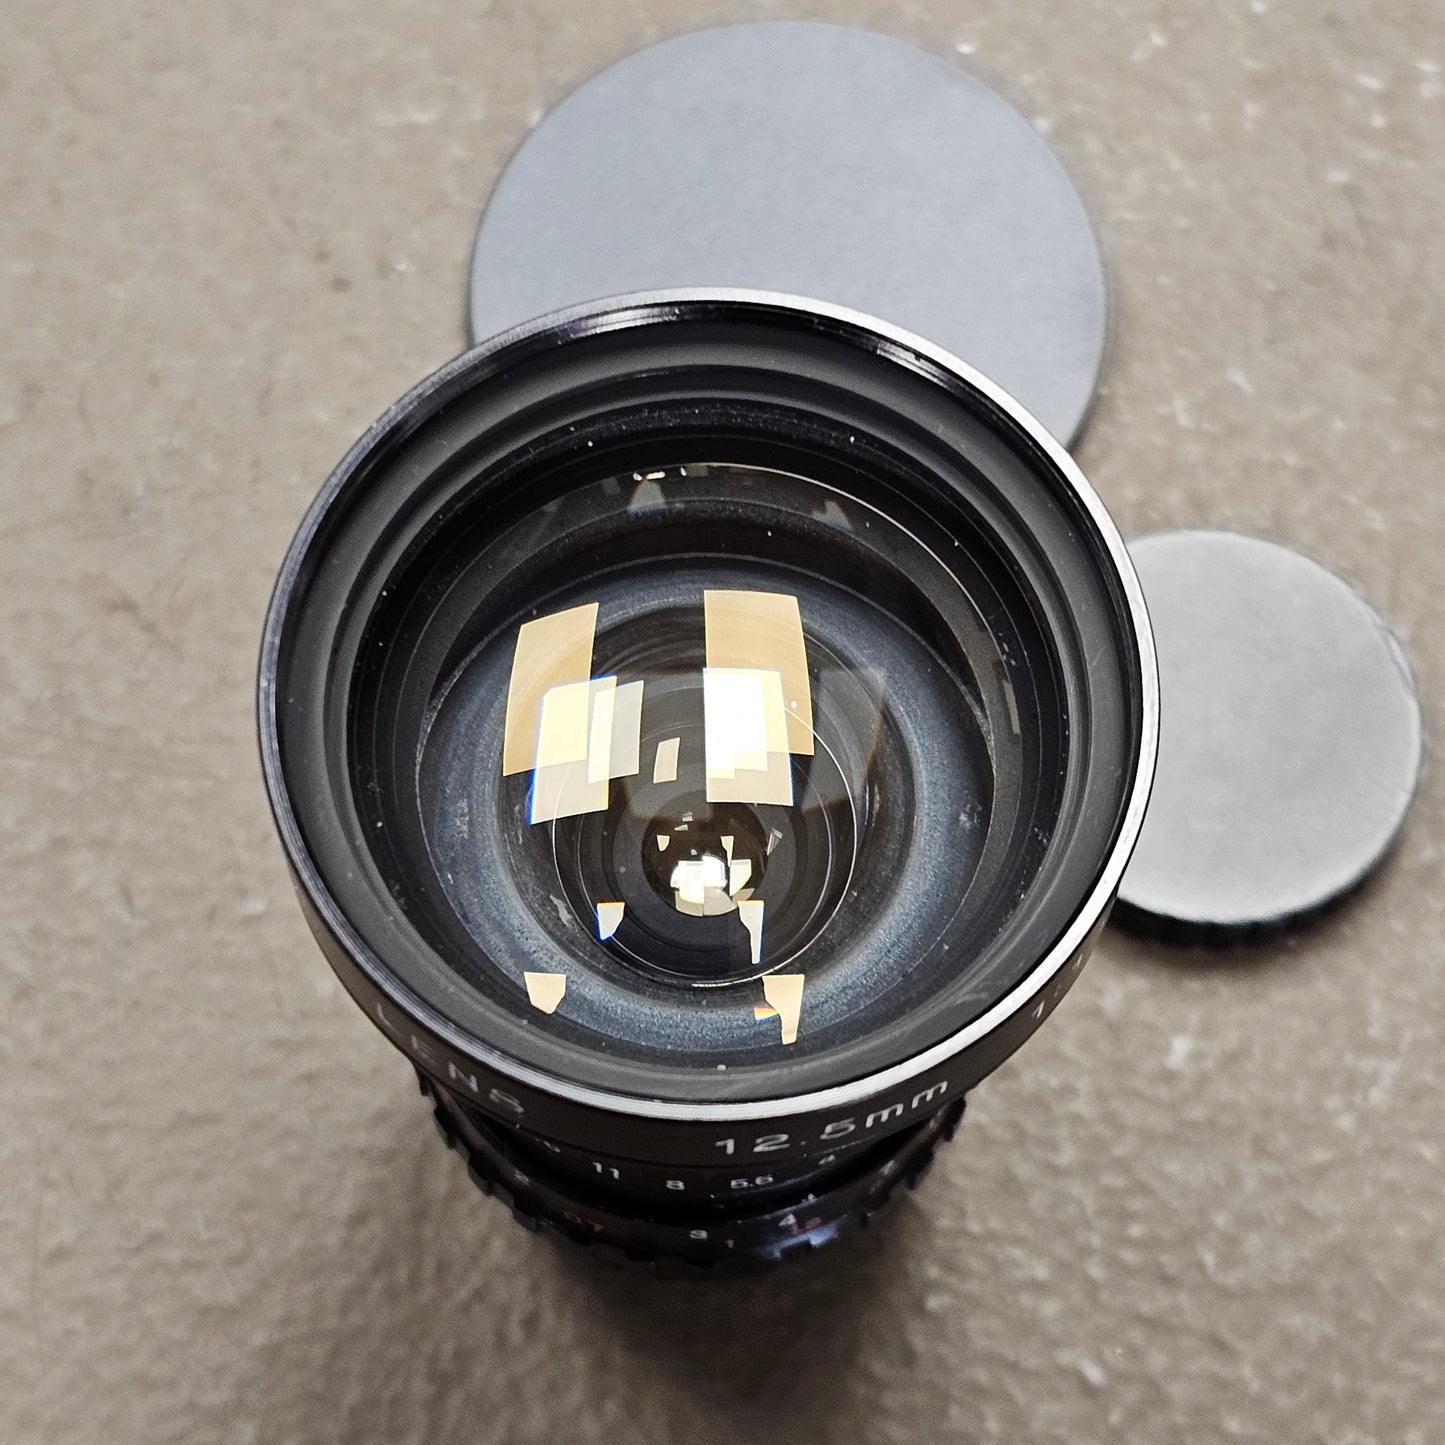 Cosmicar Television 12.5mm f1.9 C-Mount Lens (Black) S# 15730